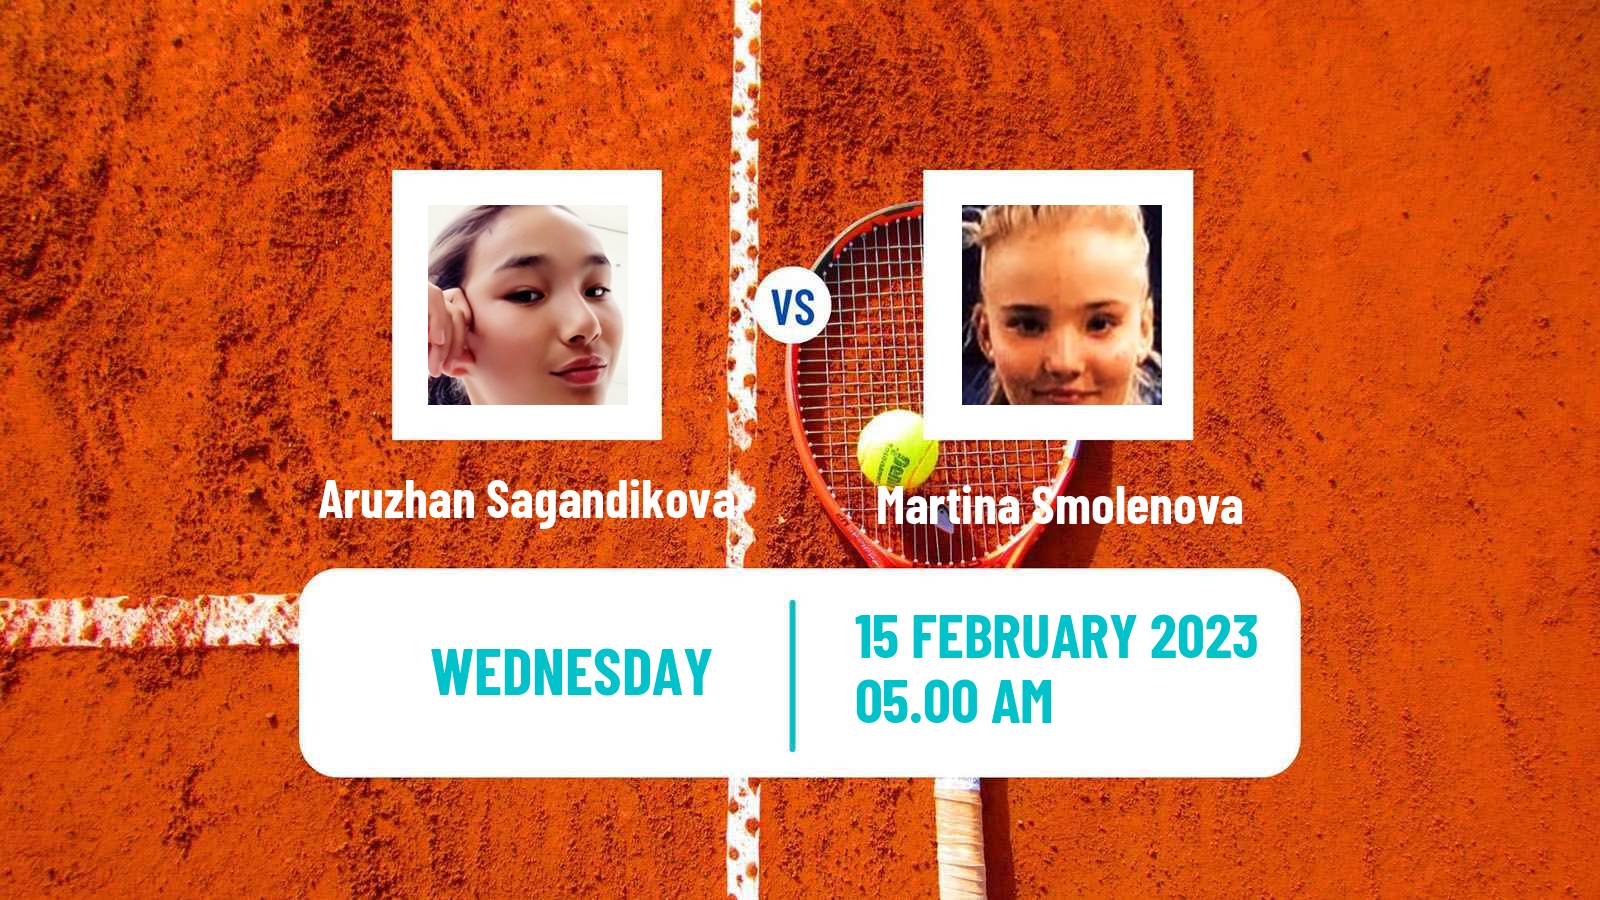 Tennis ITF Tournaments Aruzhan Sagandikova - Martina Smolenova